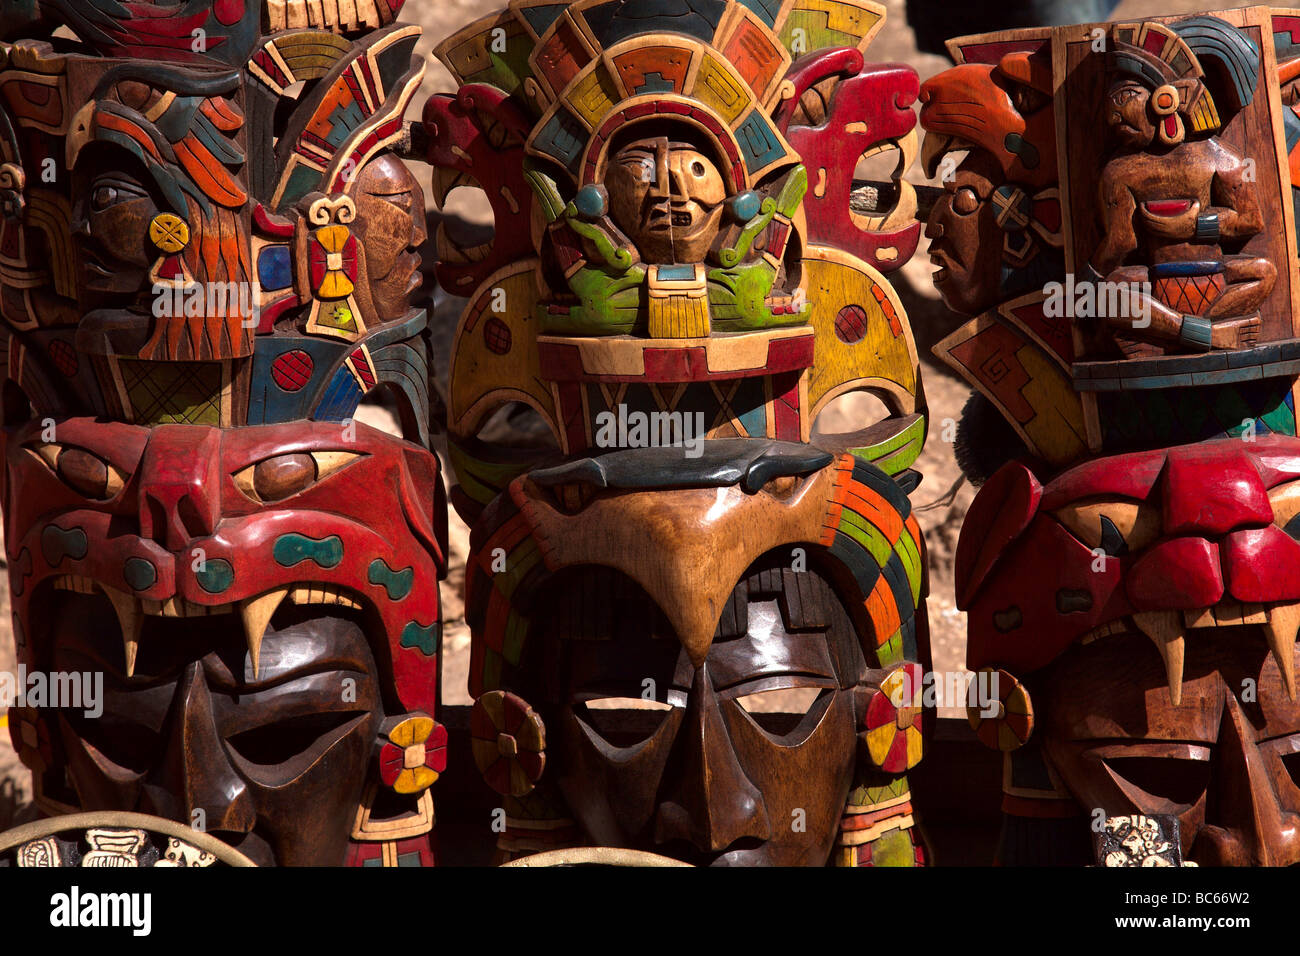 Souvenir Masks for Sale, Chichen Itza, Yucatan, Mexico Stock Photo